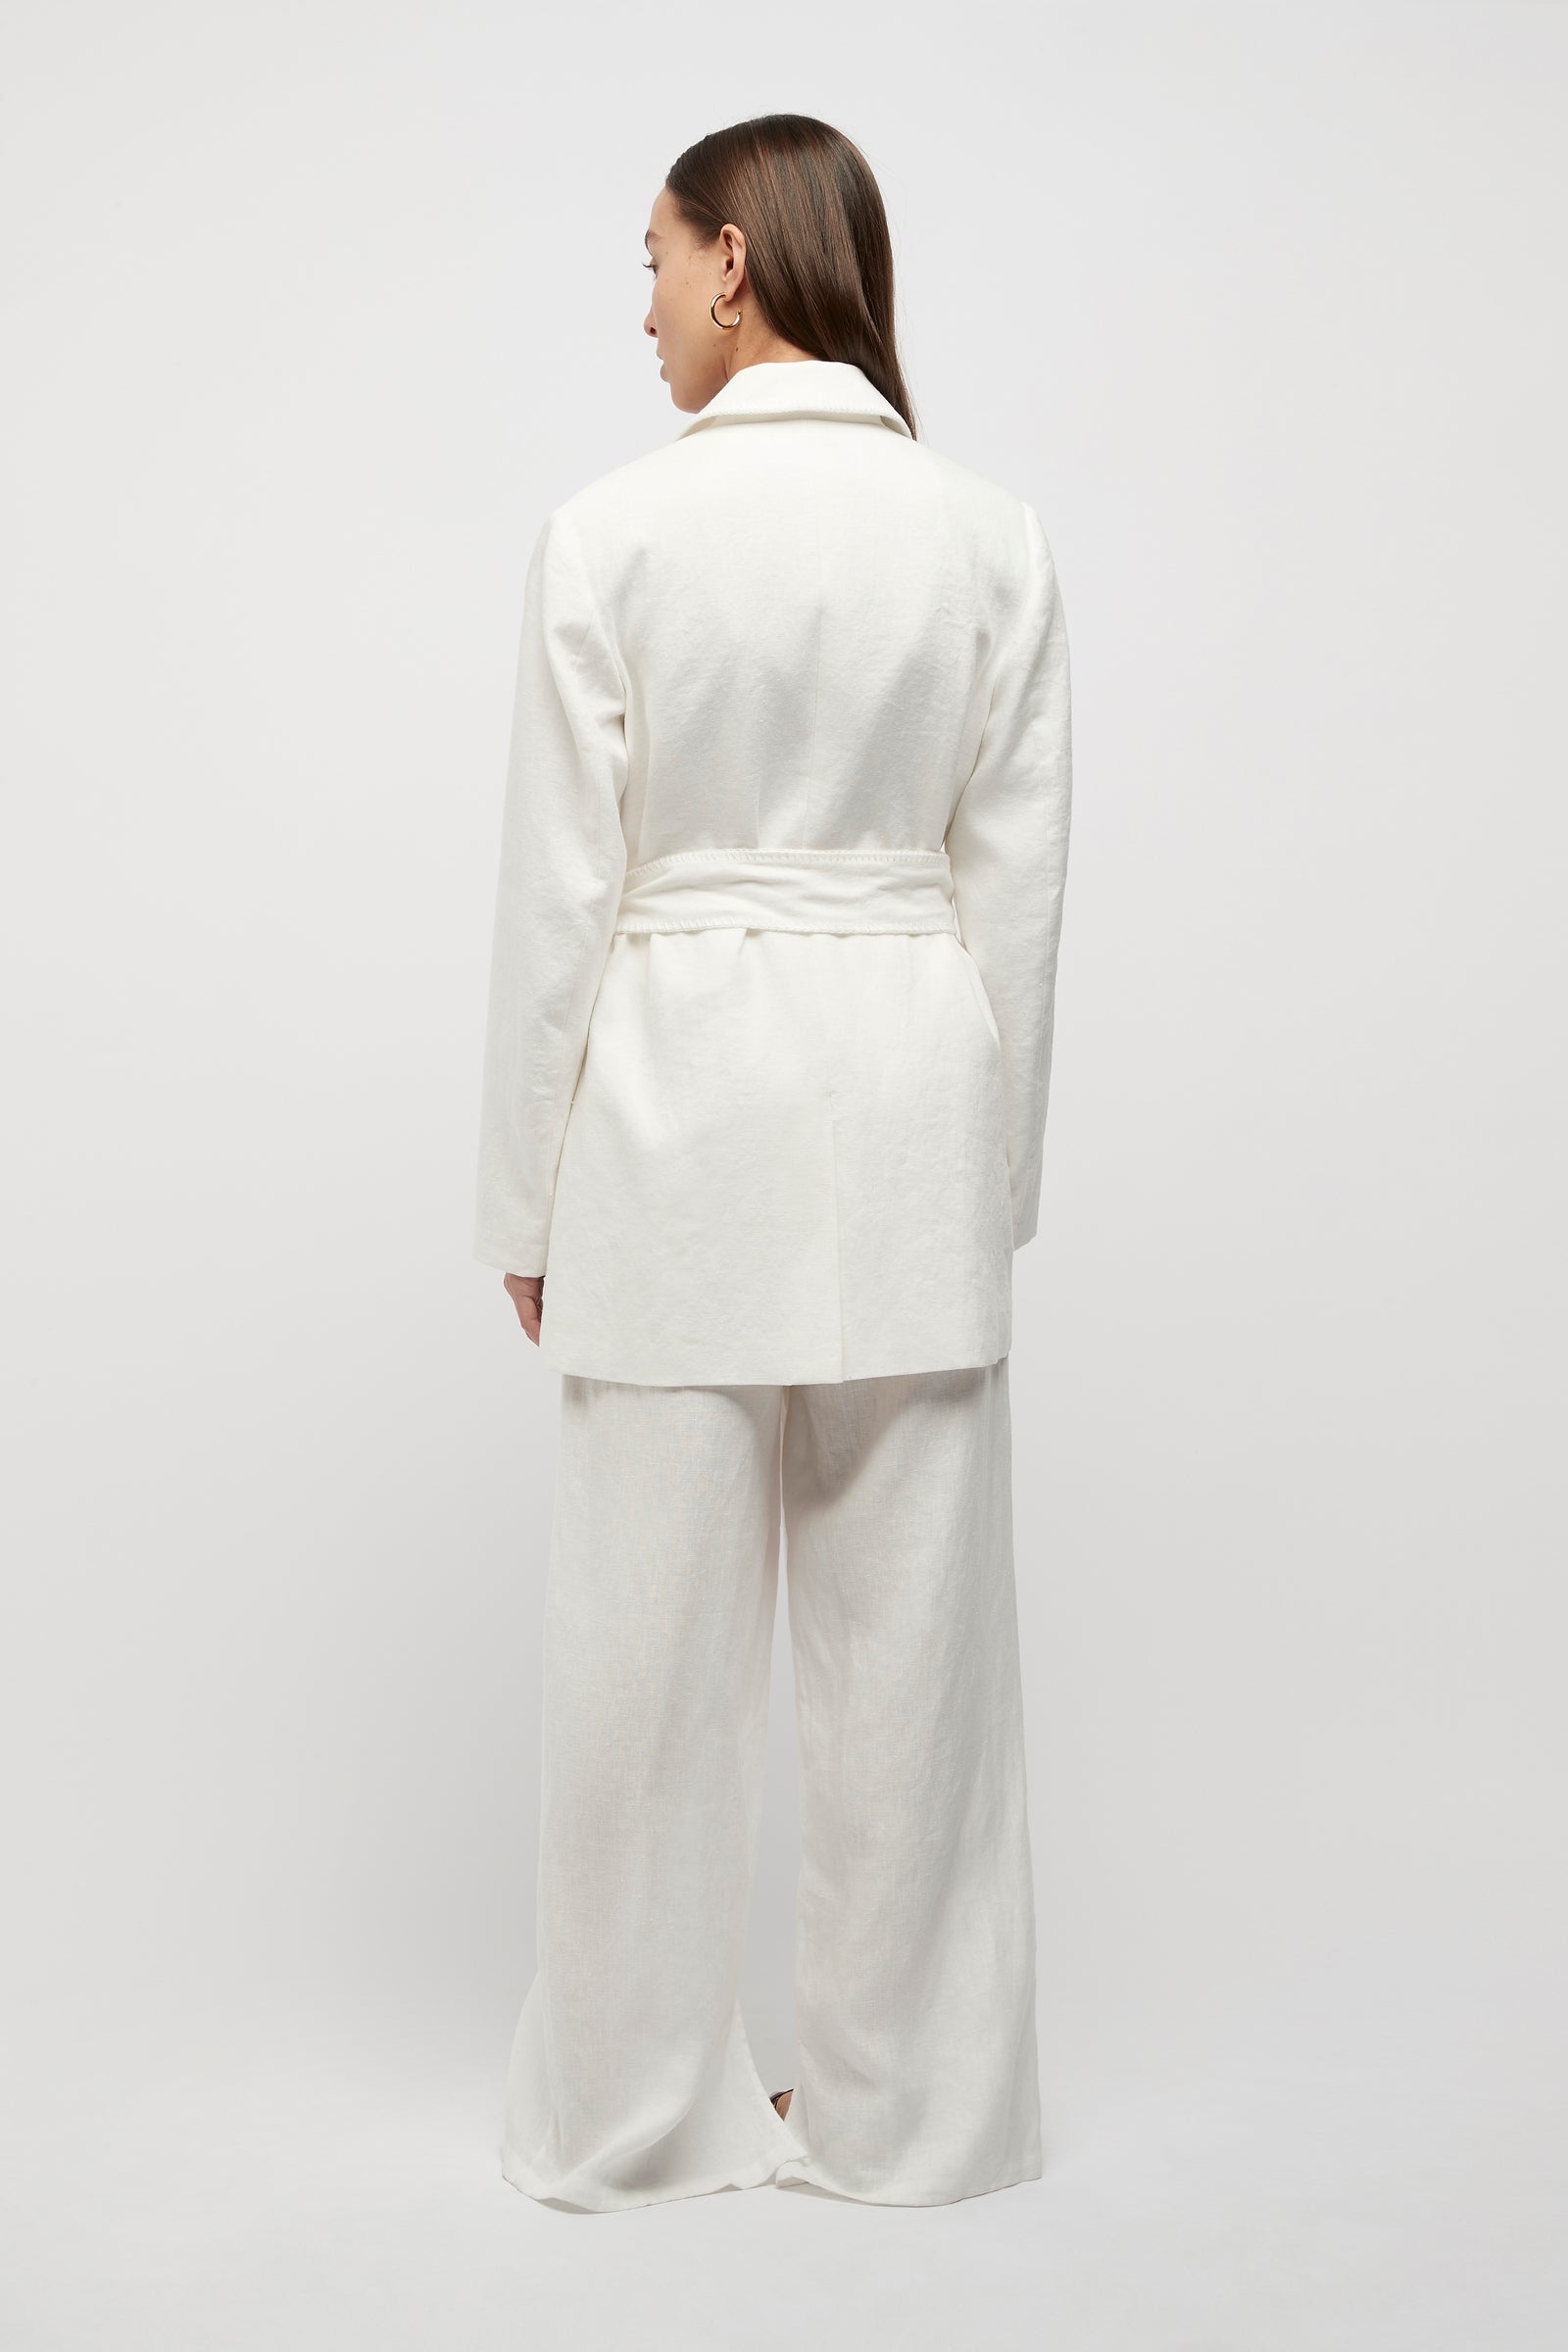 Hayworth Blanket Stitch Linen Blazer in White